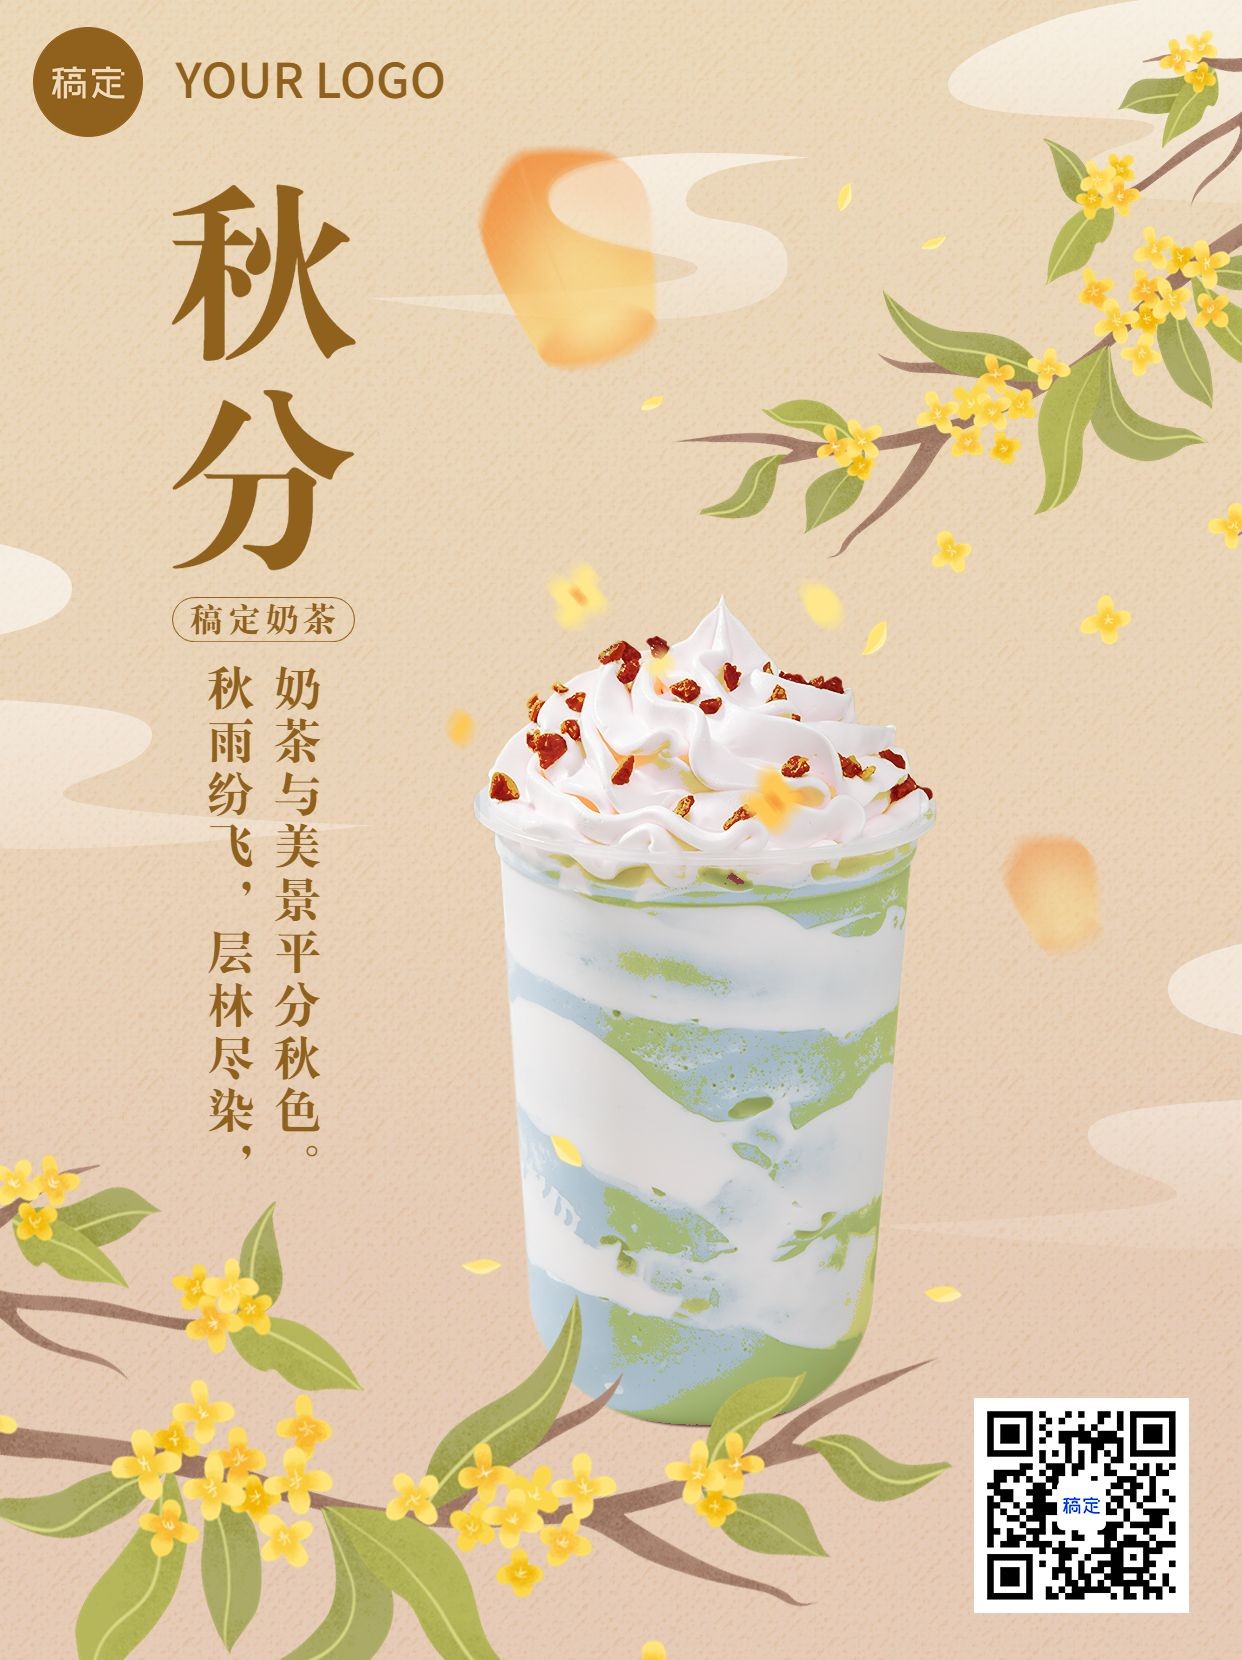 秋分奶茶产品营销手绘插画小红书配图